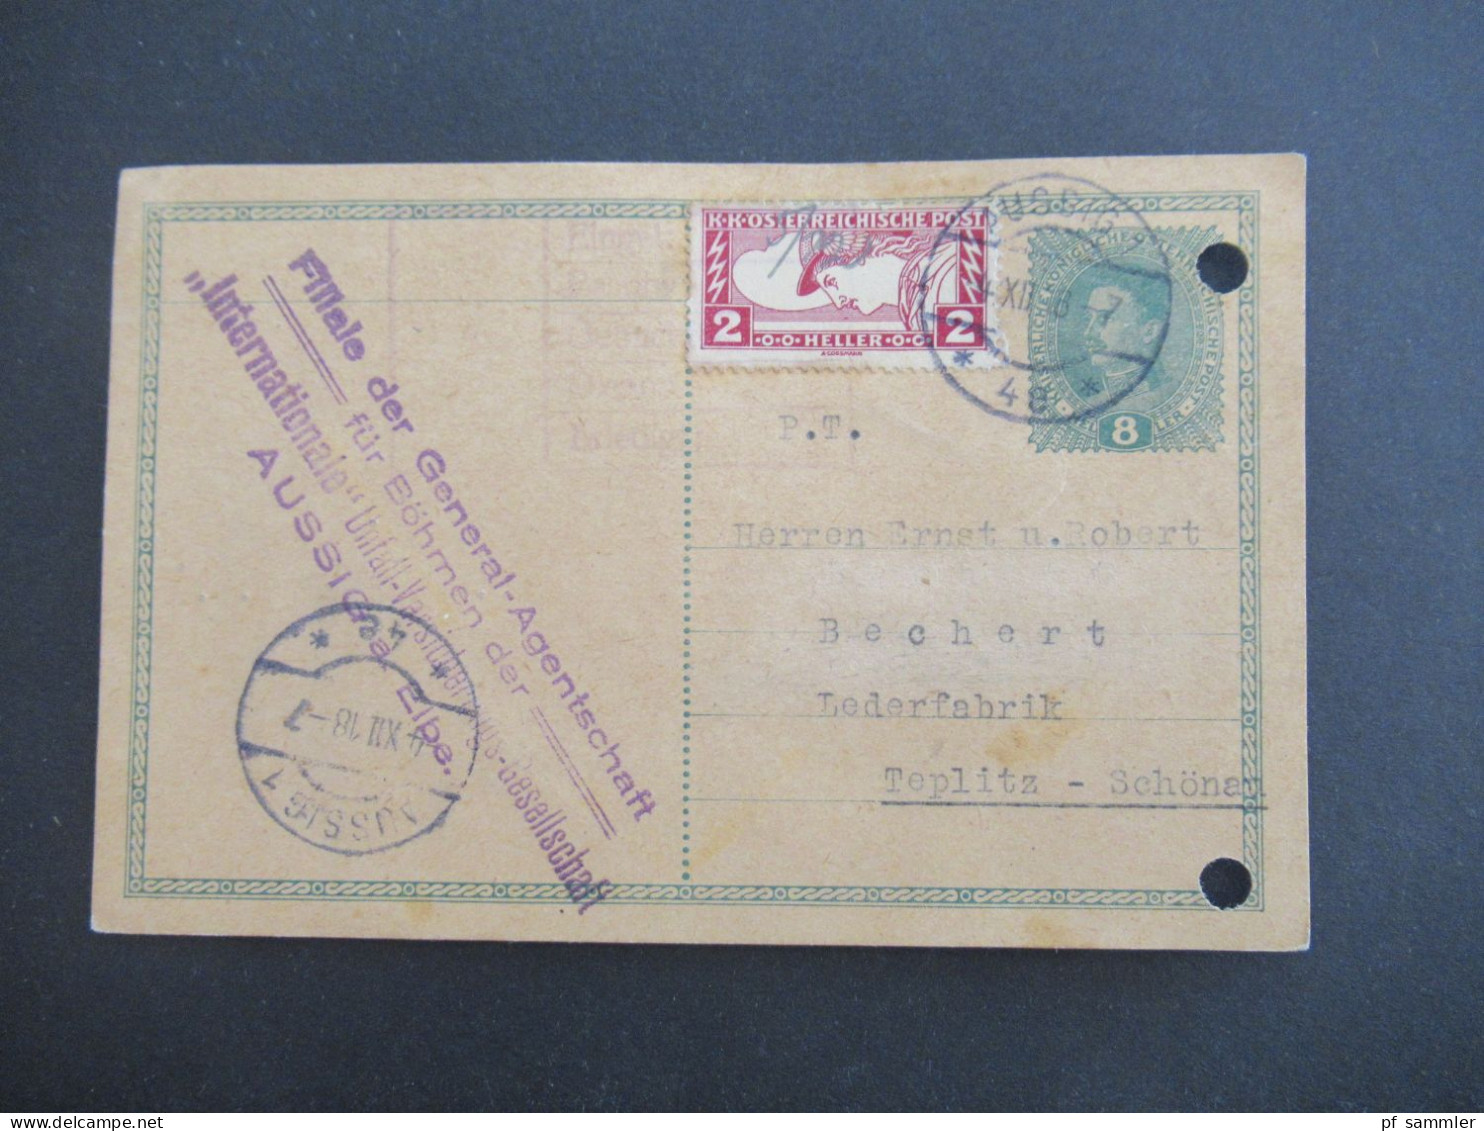 Österreich / Sudeten 1918 Ganzsache 8 Heller Mit Zusatzfrankatur Drucksachen Eilmarke Mi.Nr.219 Aussig - Teplitz Schönau - Postkarten